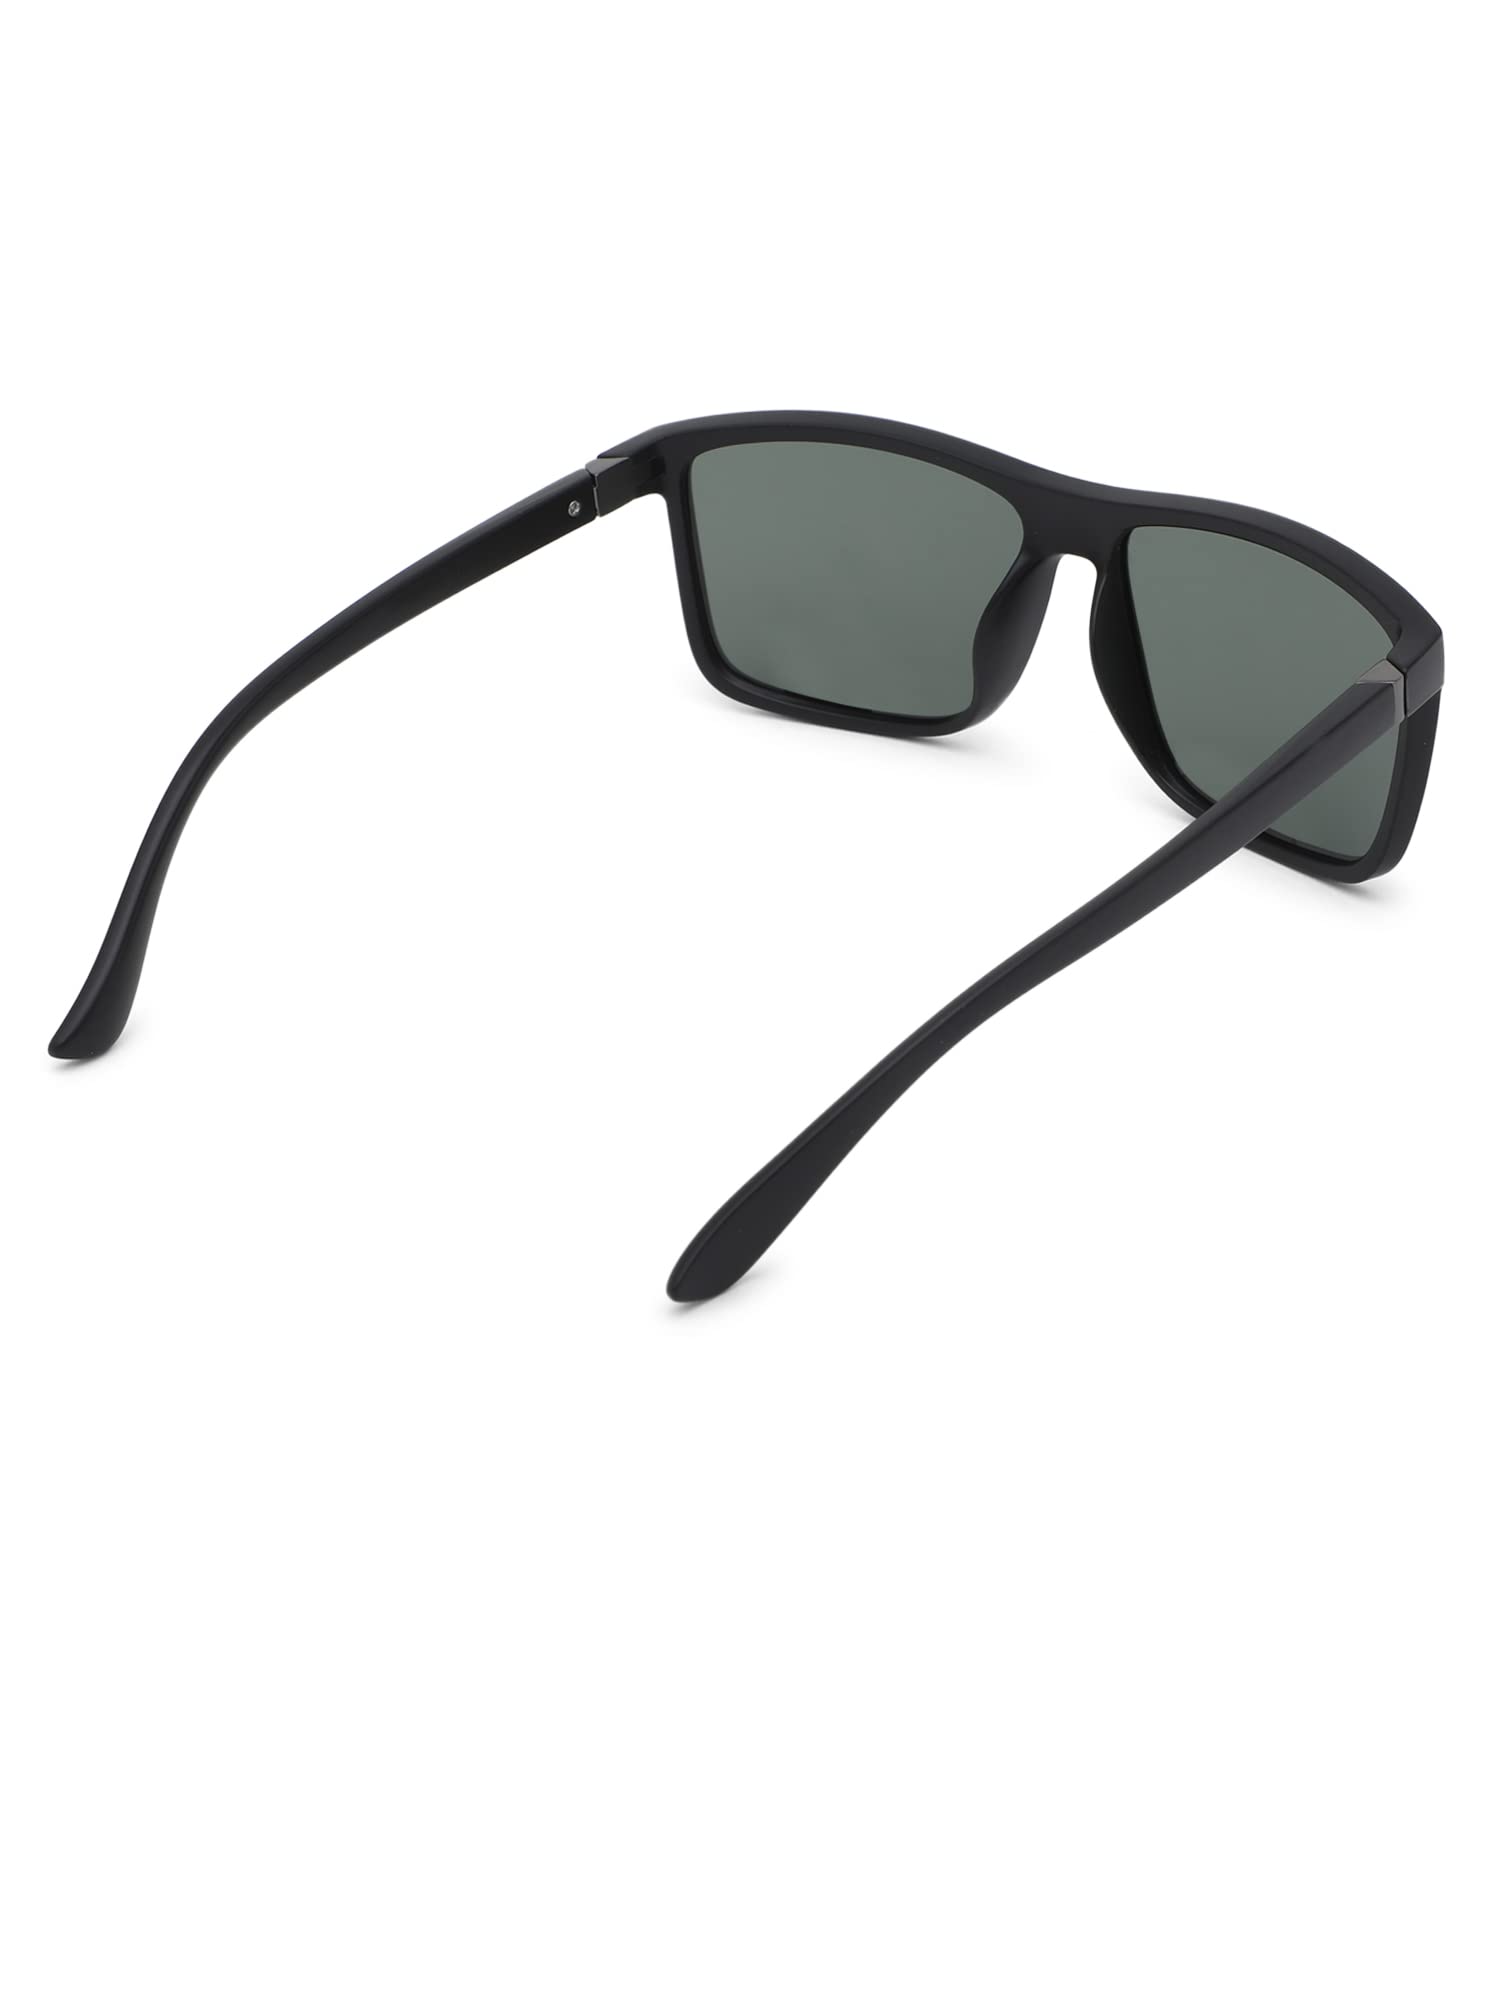 Intellilens Square Polarized & UV Protected Sunglasses For Men & Women | Goggles for Men & Women (Black & Green) (60-11-145)